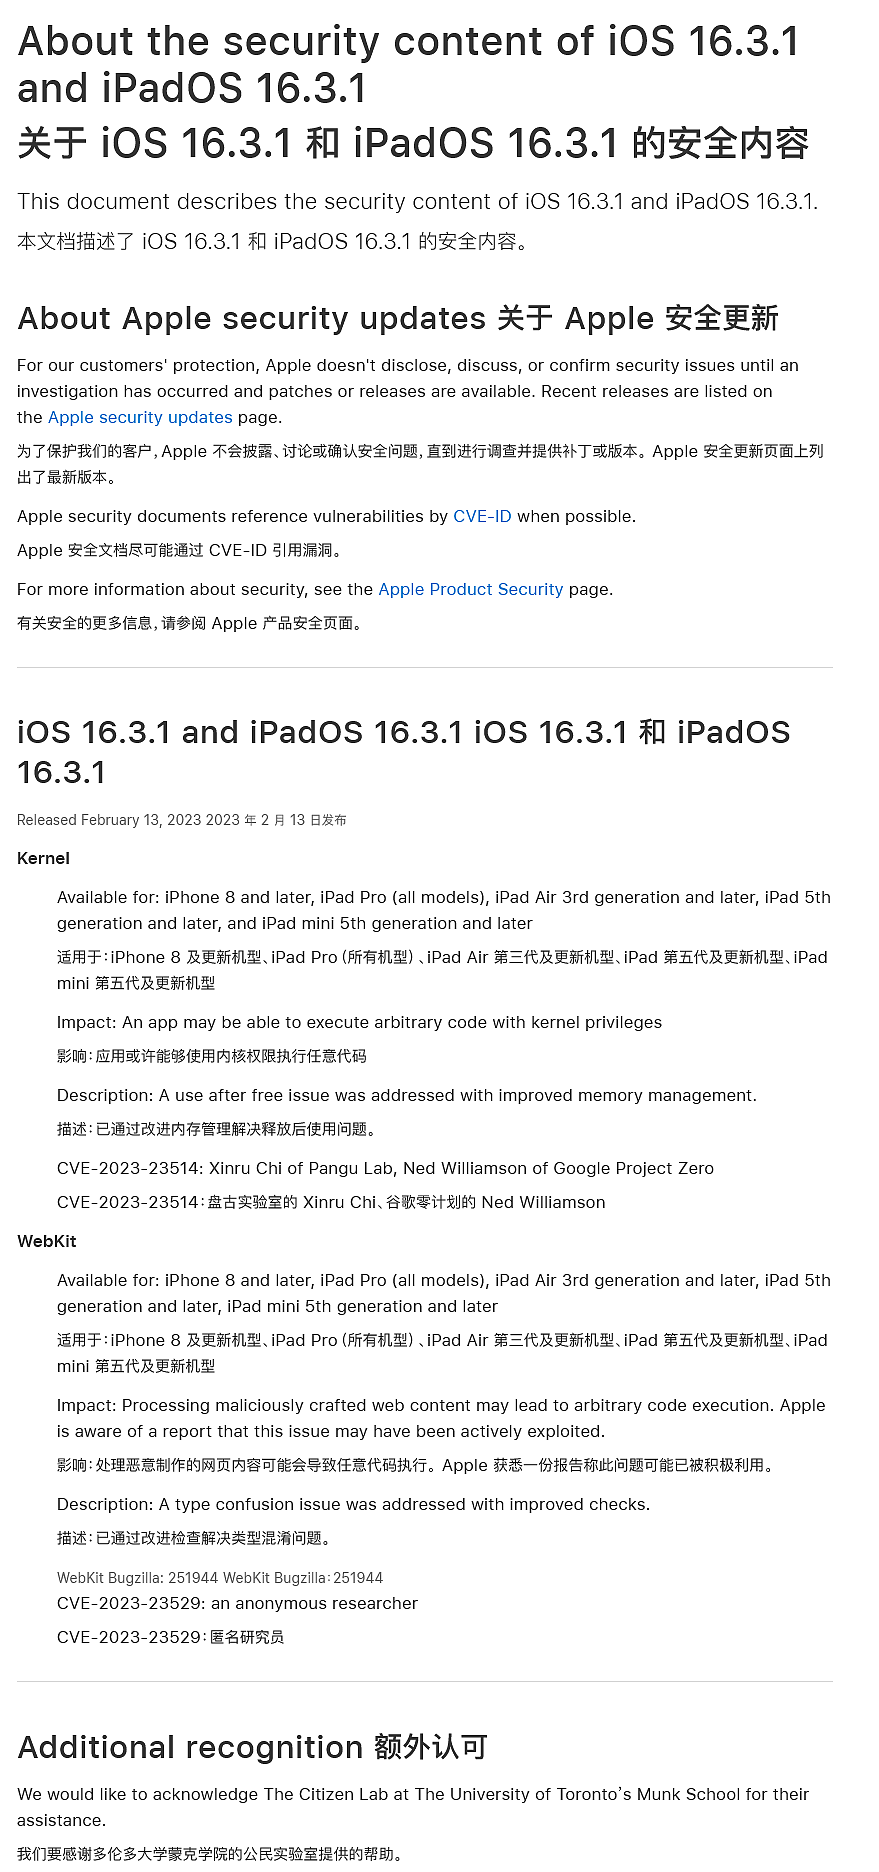 推荐尽快升级：苹果 iOS 16.3.1 和 macOS 13.2.1 修复了已被黑客利用的高危漏洞 - 3